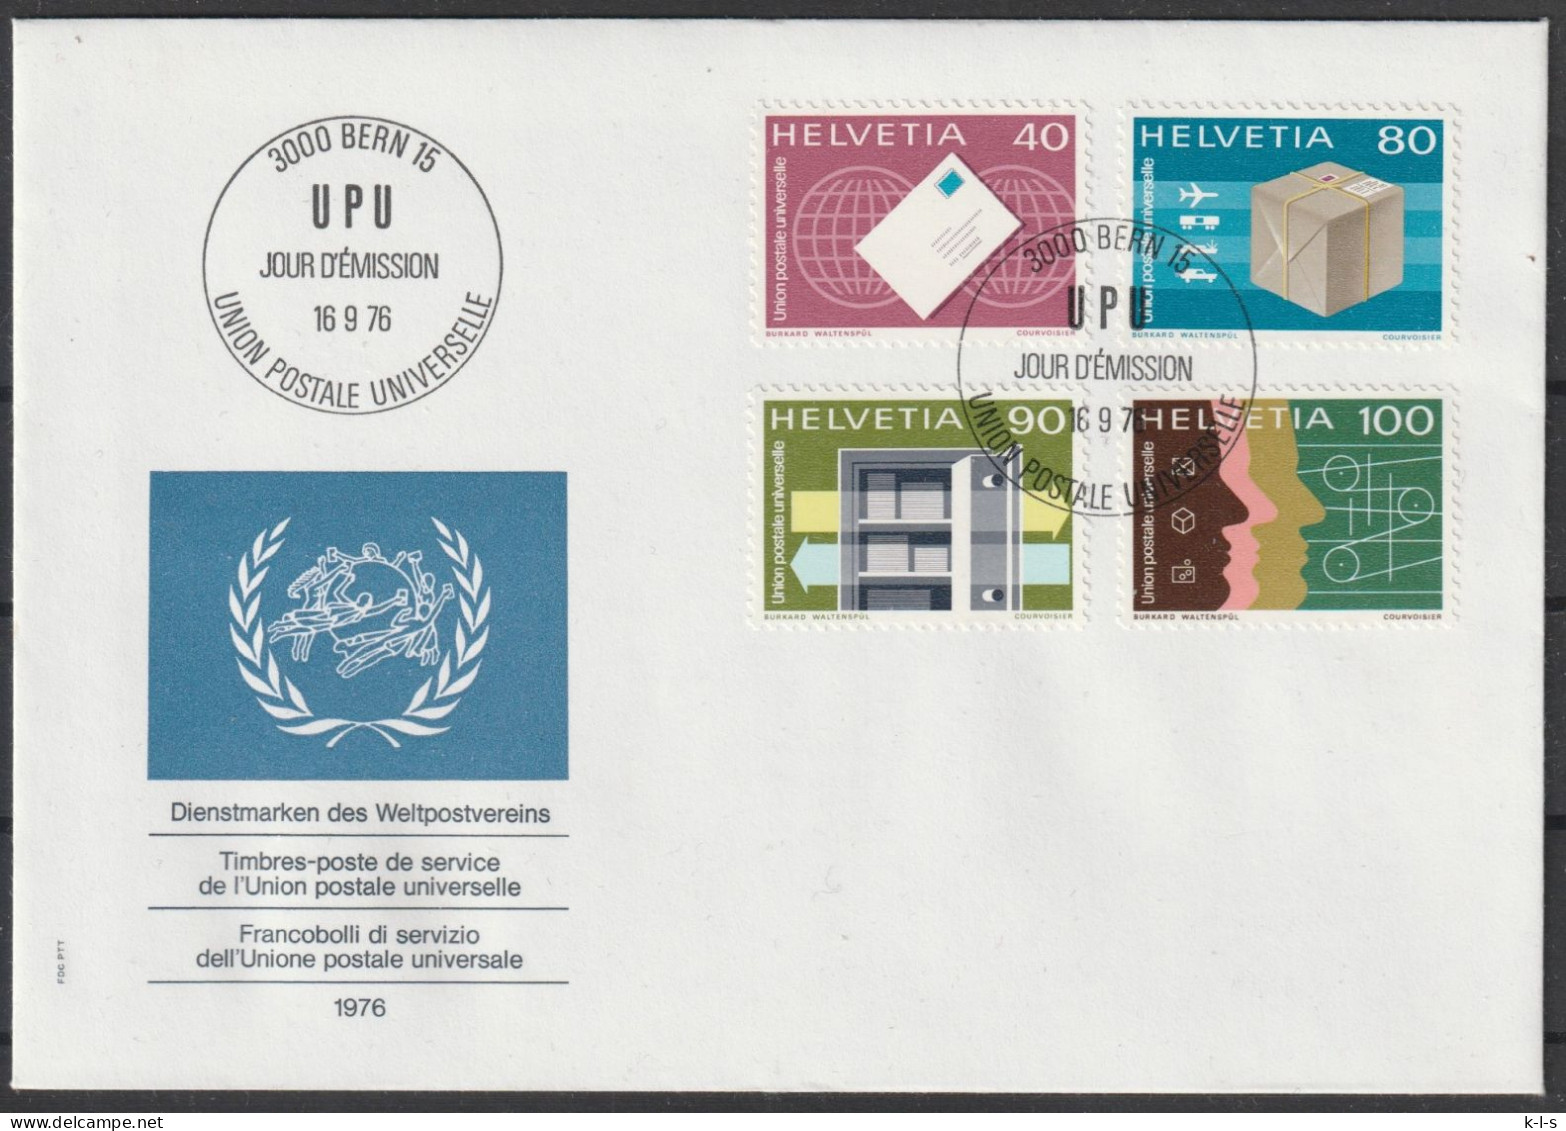 Schweiz: Int. Organisation (UPU) 1999, FDC Blanko Satzbrief Mi. Nr. 10-13, Tätigkeitsbereiche Der UPU, ESoStpl.  BERN - Covers & Documents